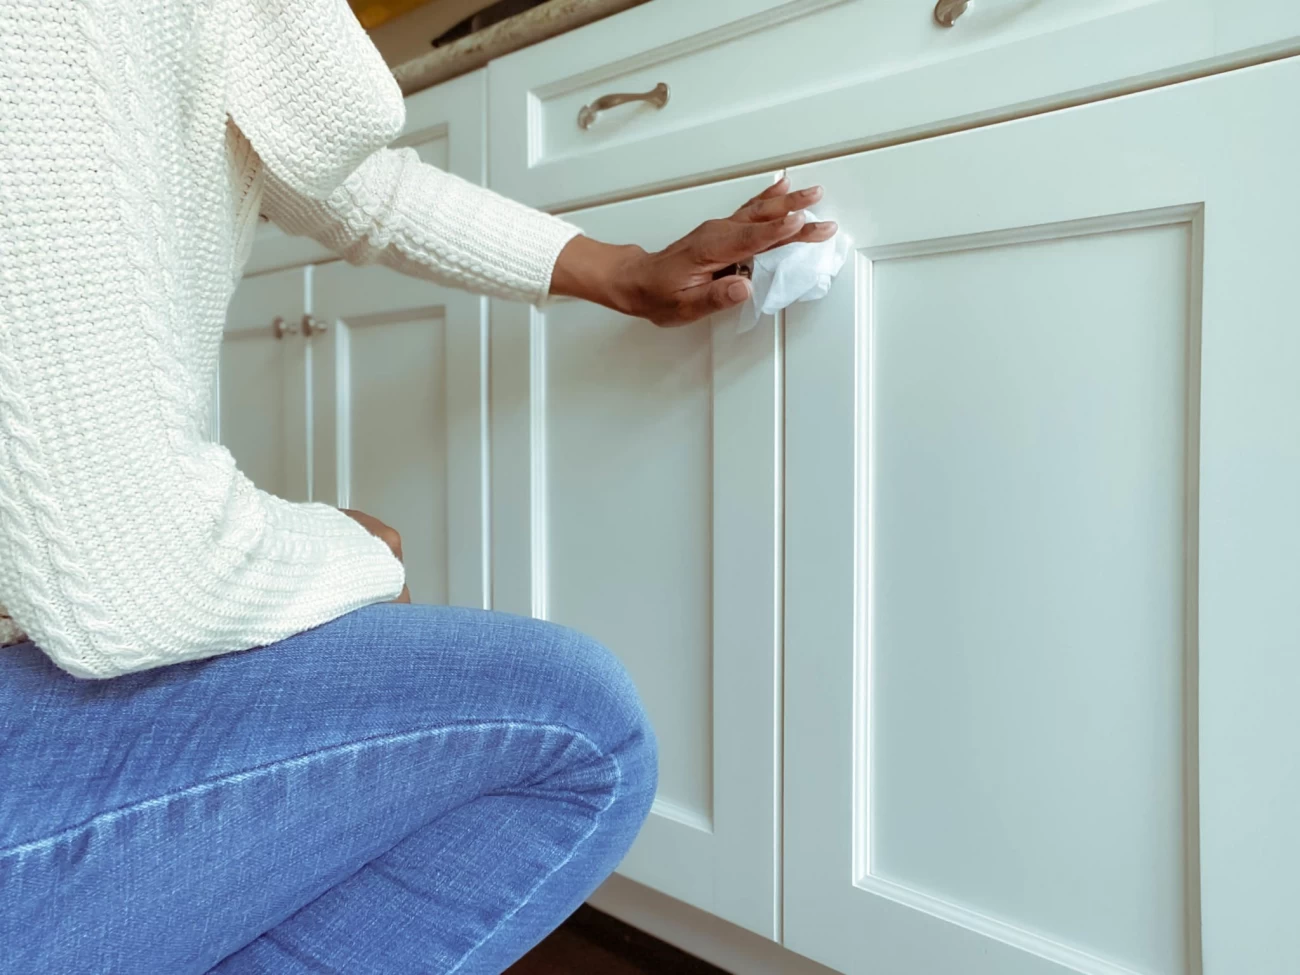 بررسی کثیف ترین لوازم آشپزخانه